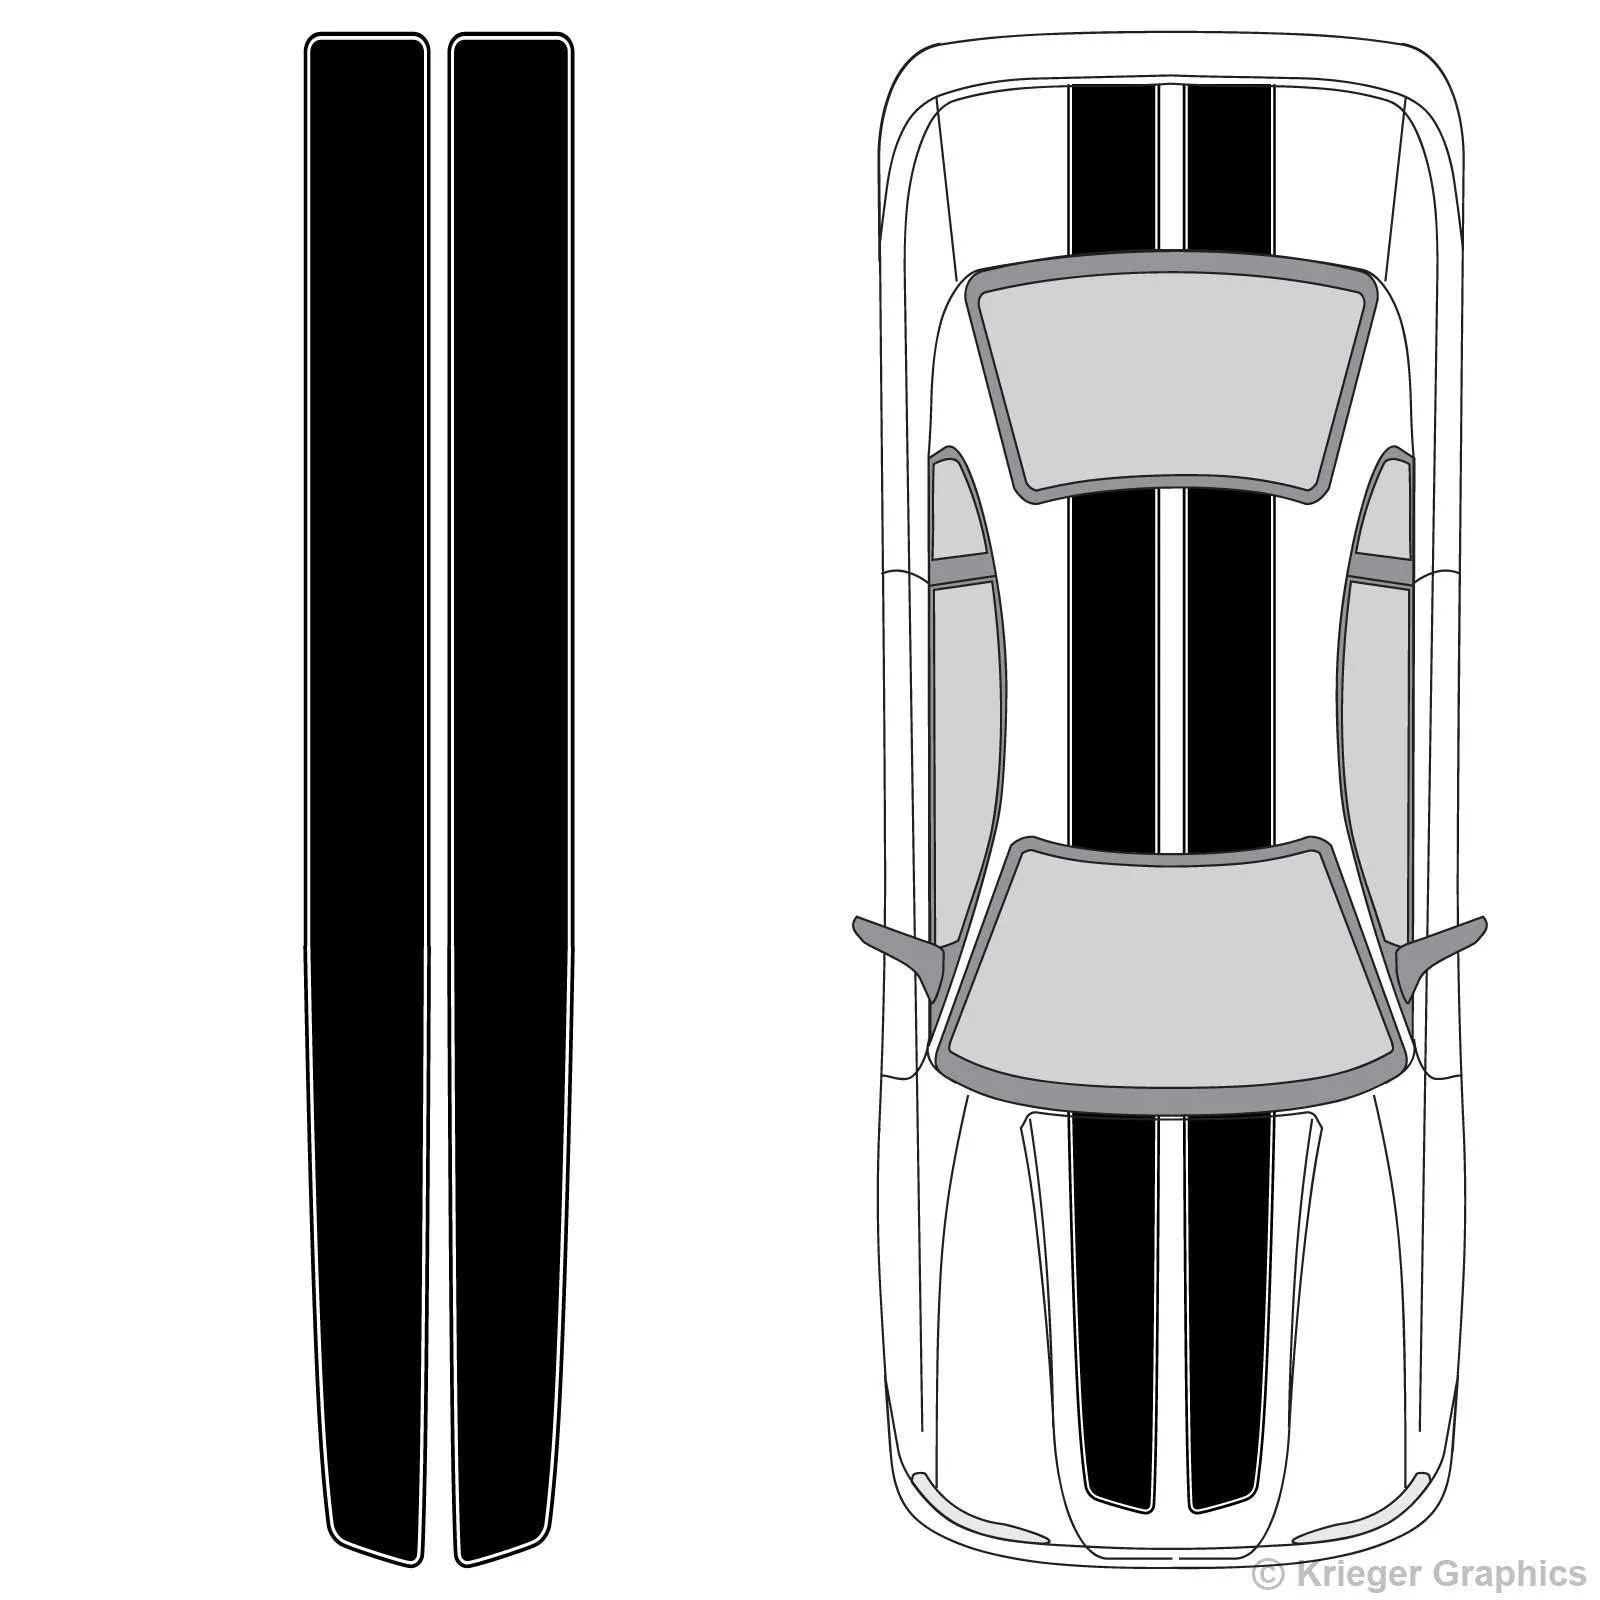 Для 1 комплекта 1 комплект универсальных виниловых полос EZ Rally Racing с контуром для любого стиля автомобиля или грузовика